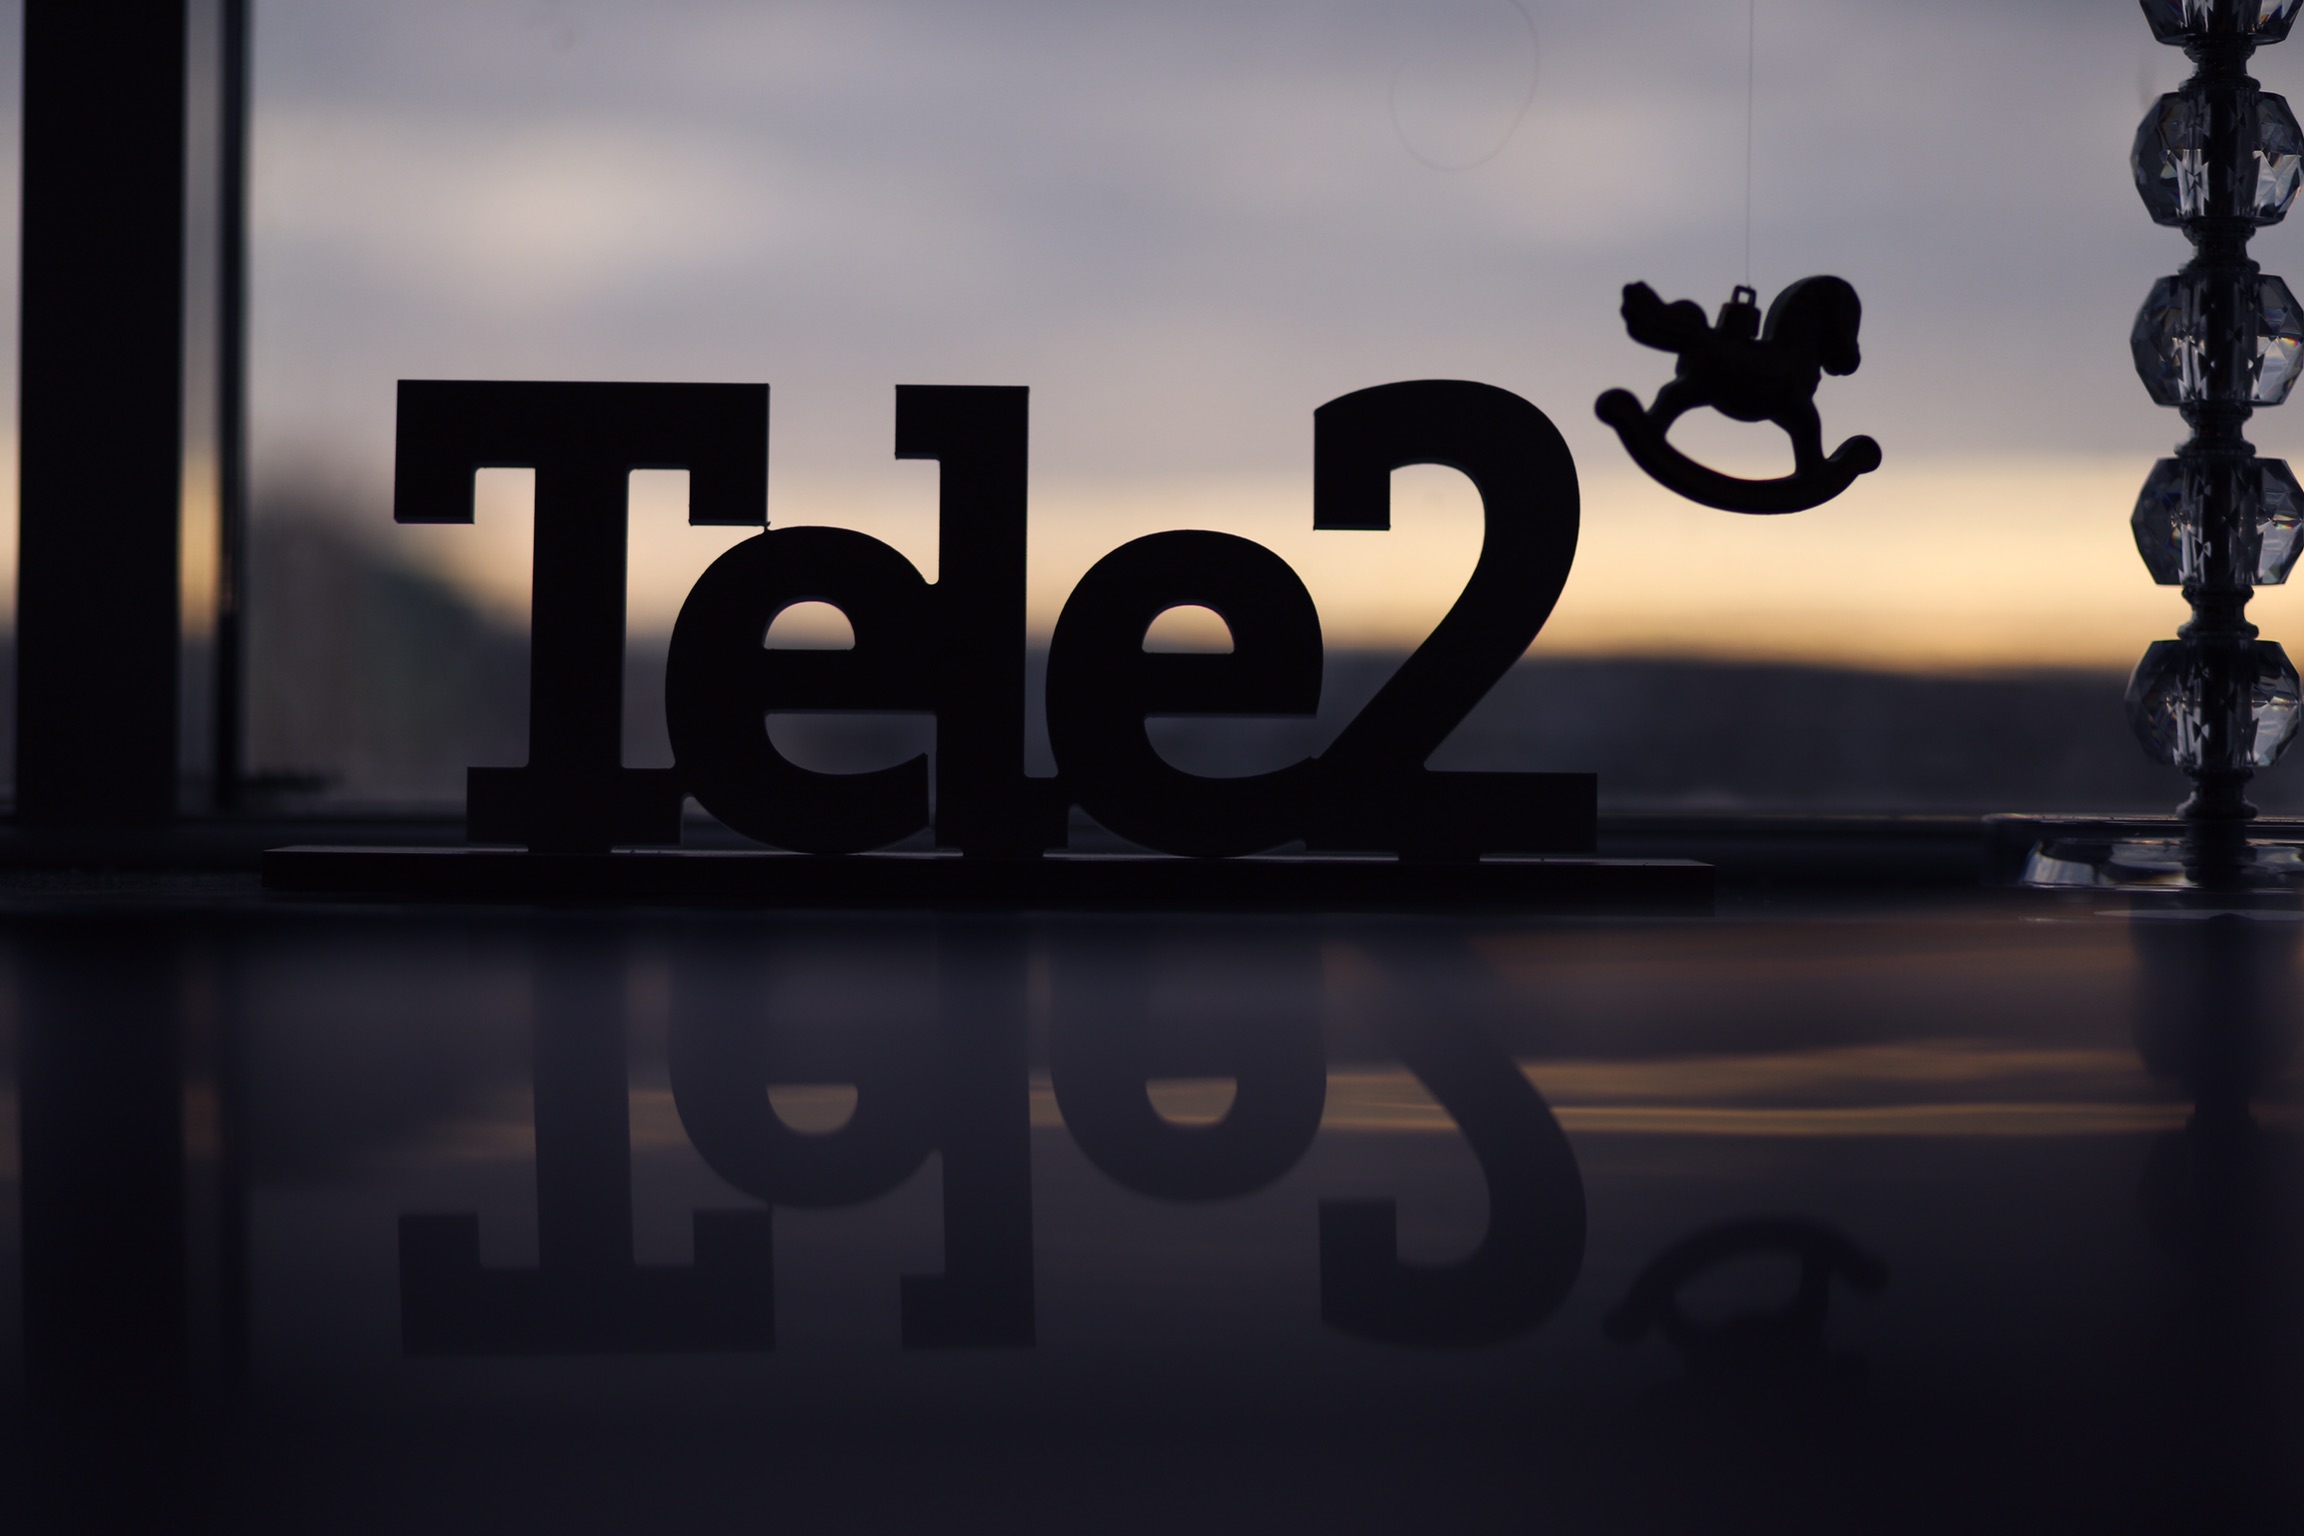    tele2   2021- 